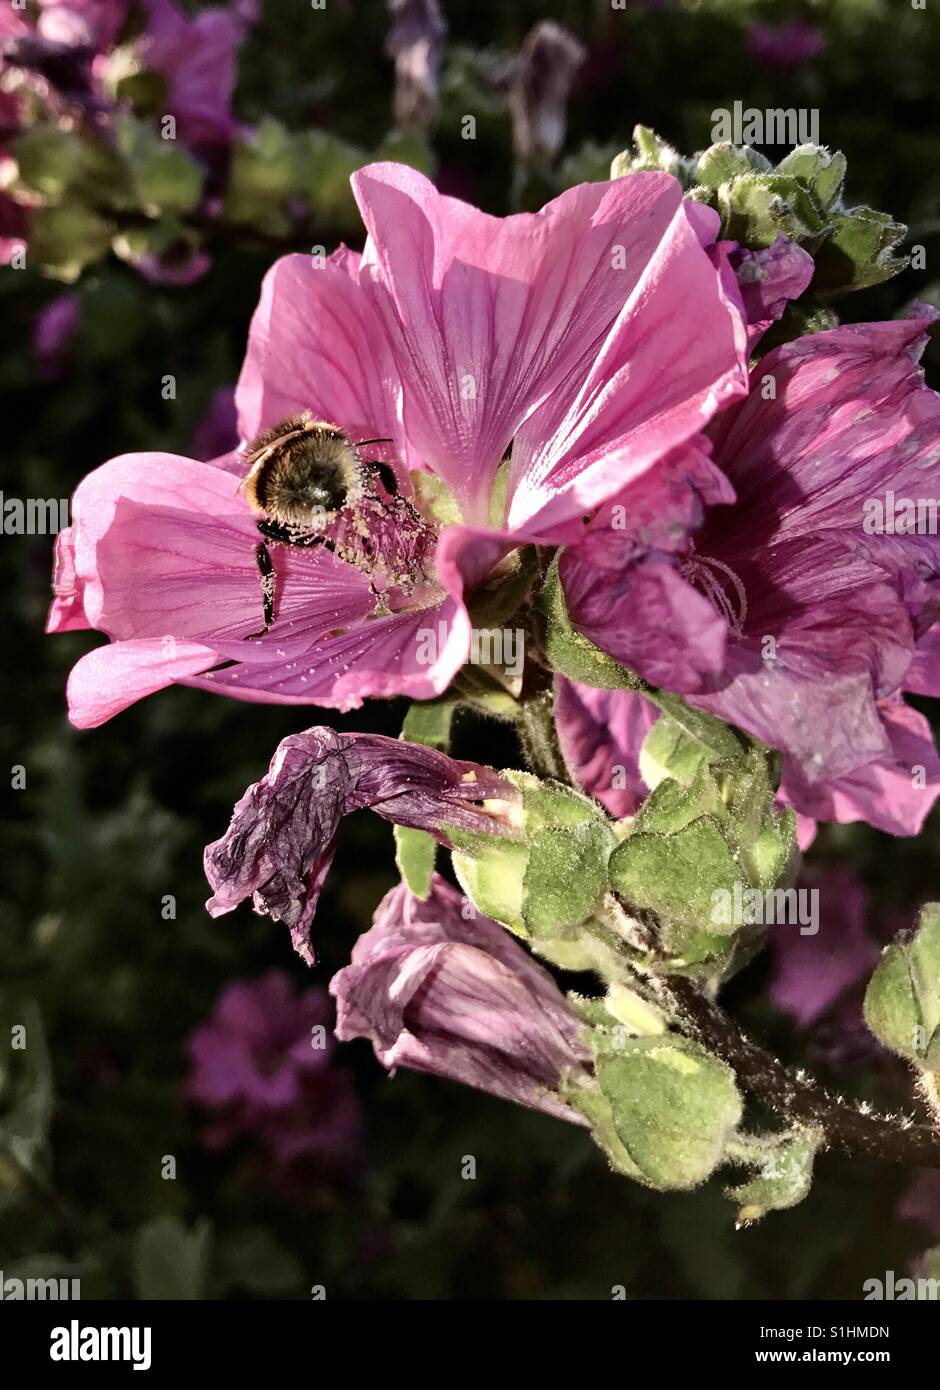 Un miele delle api prende il nettare da un fiore. Foto Stock